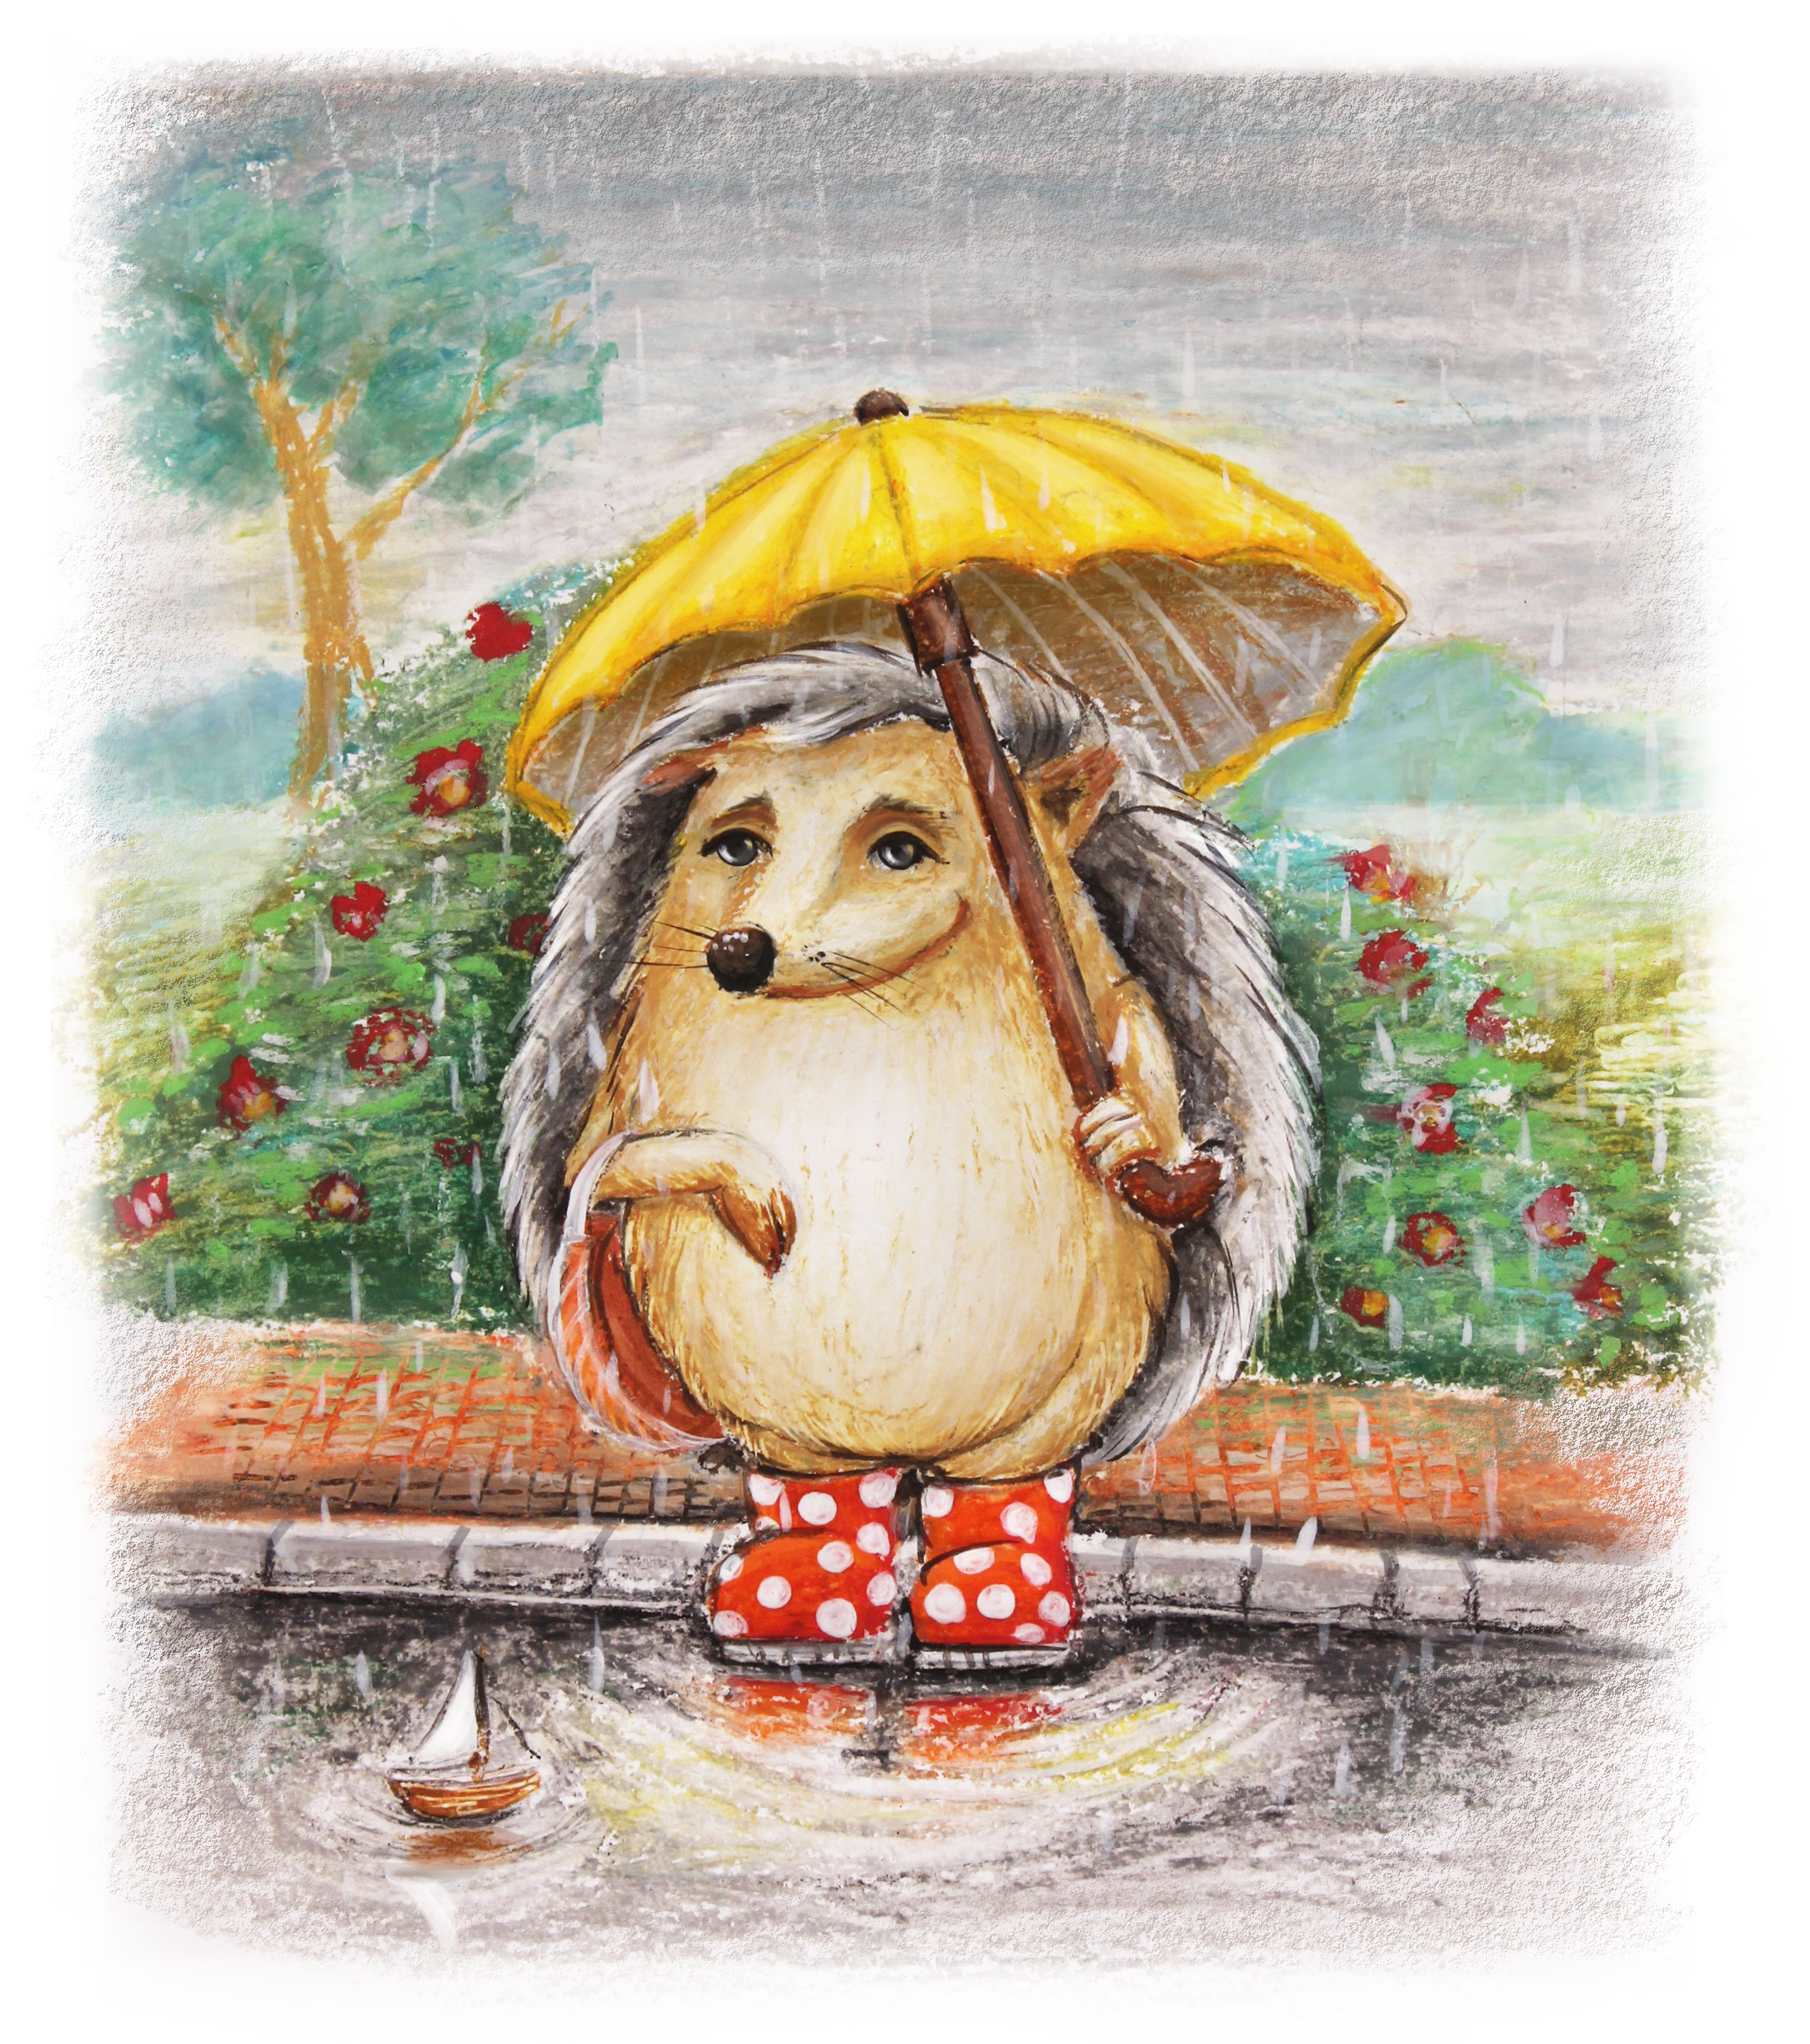 Ежик дождь. Ёжик с зонтиком. Ежик под дождем. Еж под зонтом. Осенний Ёжик.